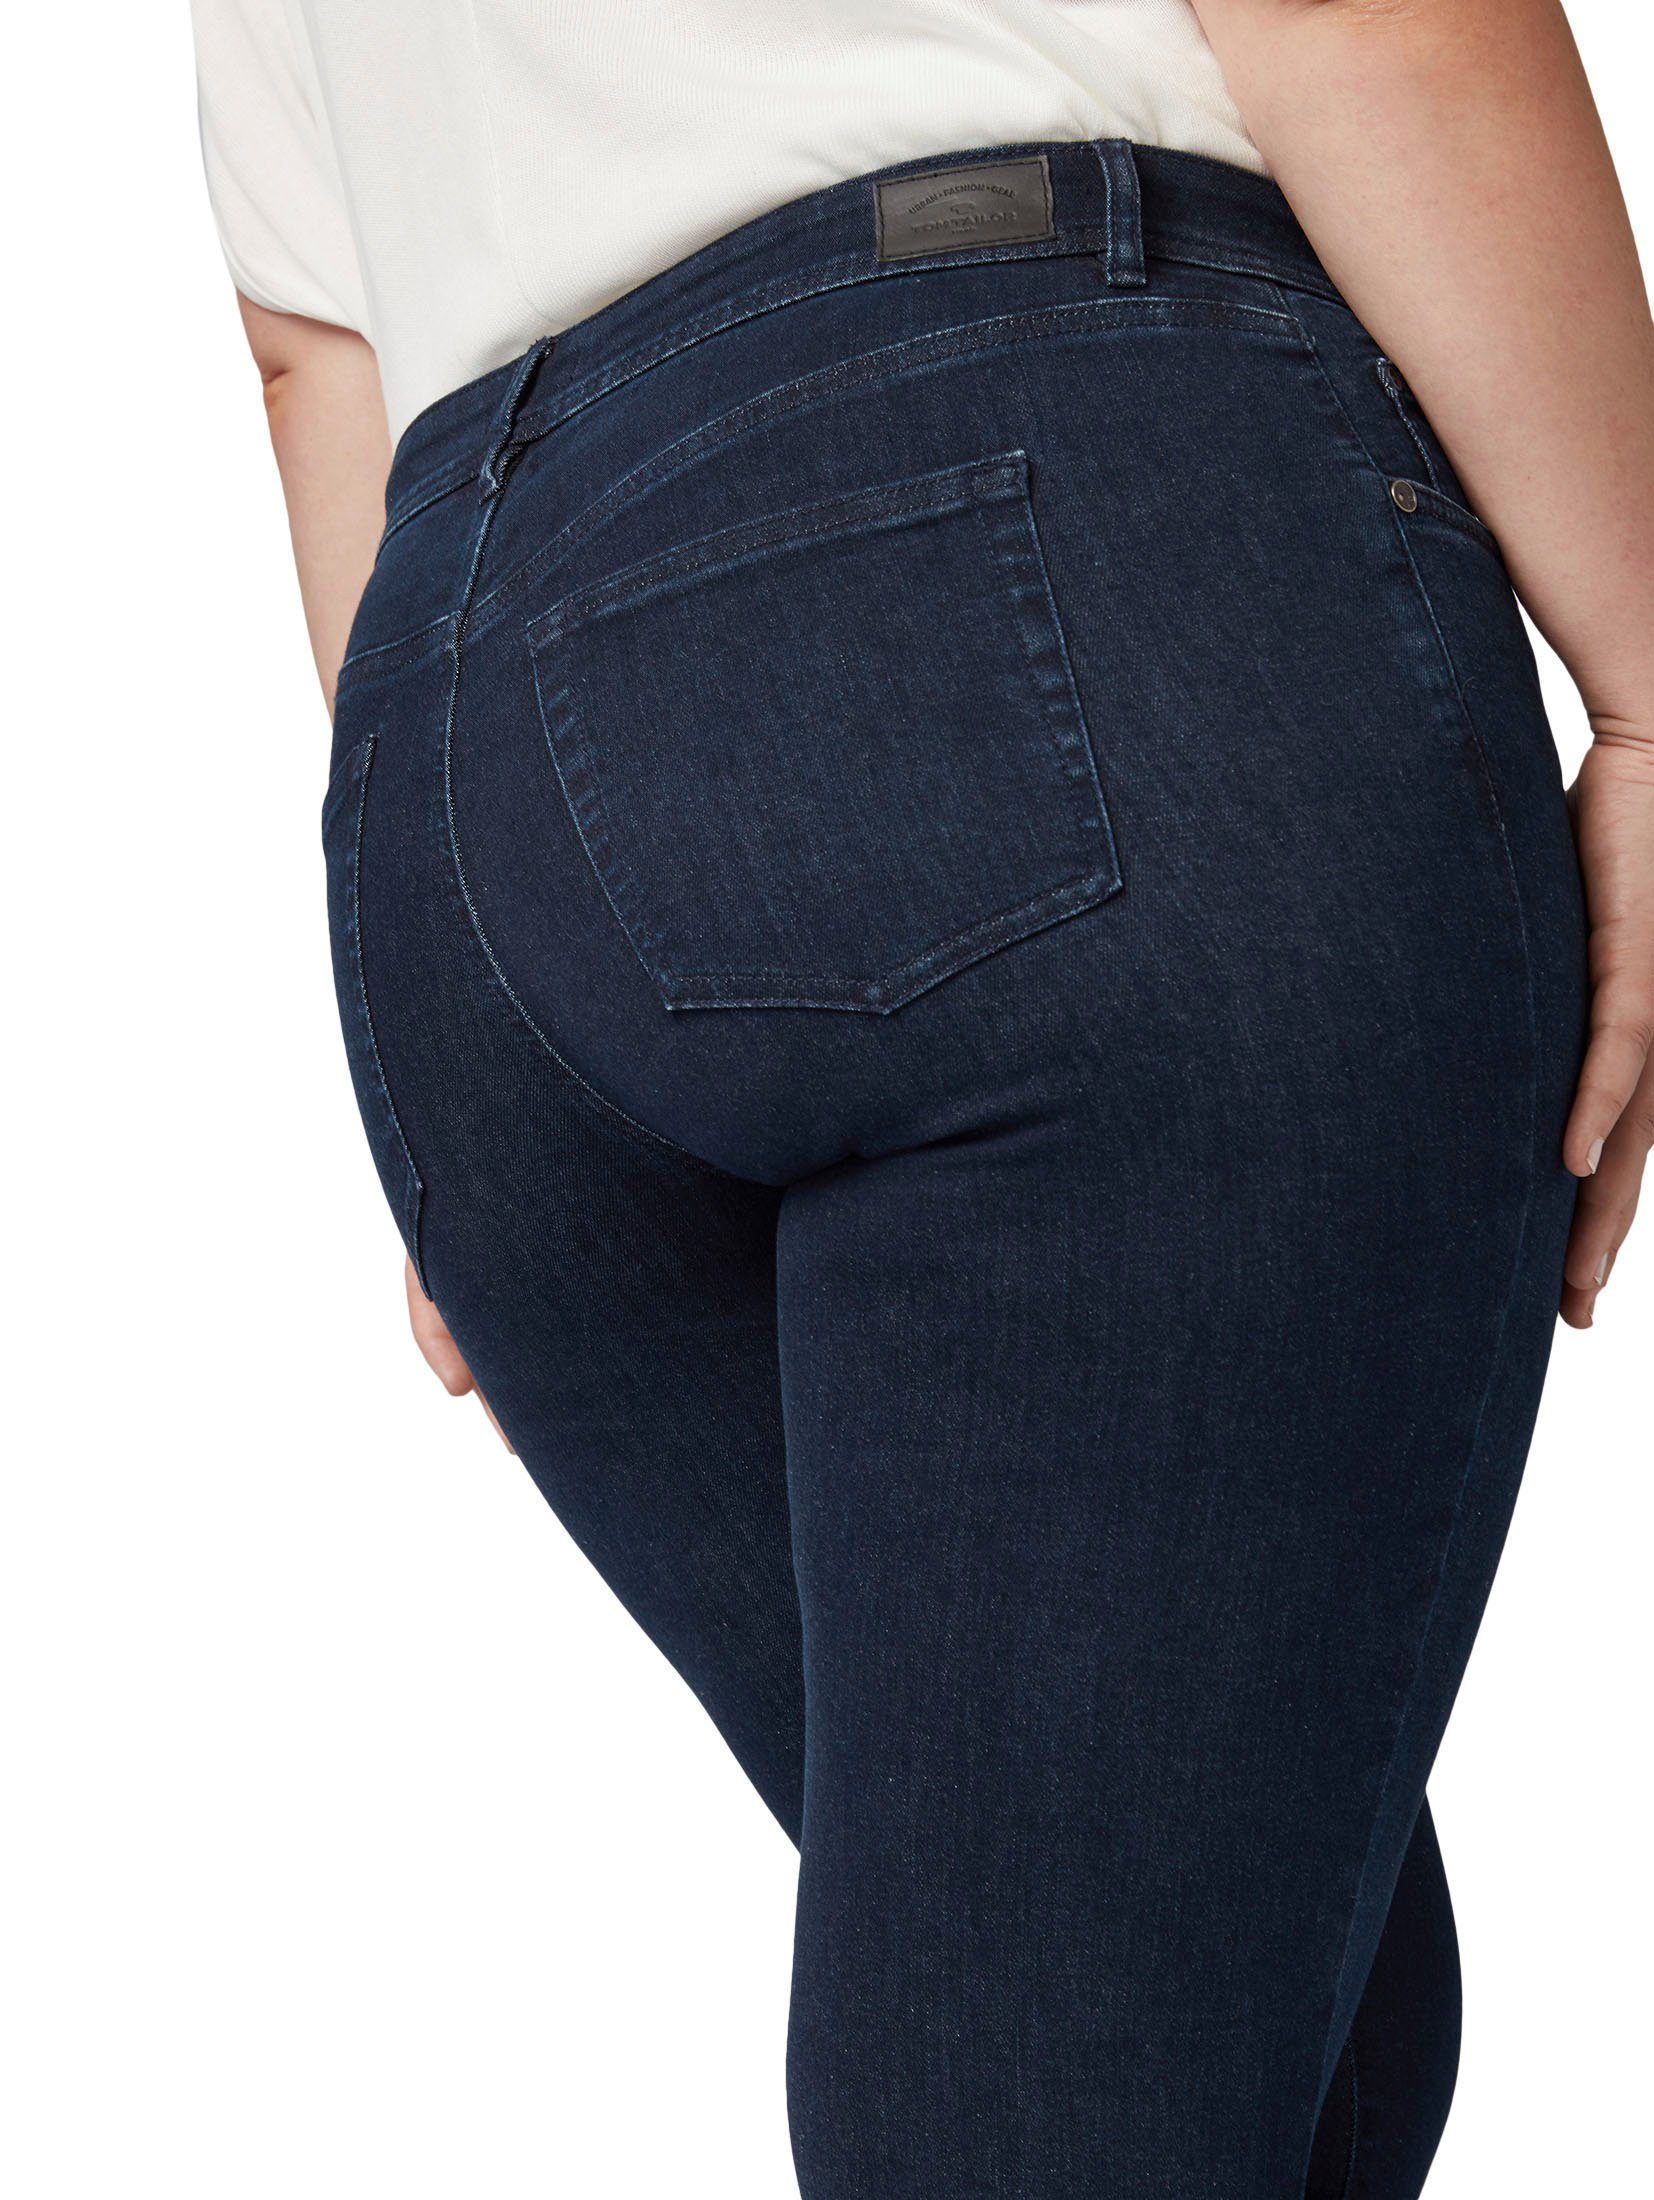 TOM TAILOR Pocket- Skinny-fit-Jeans PLUS 5- klassischer Form darkblue-denim in